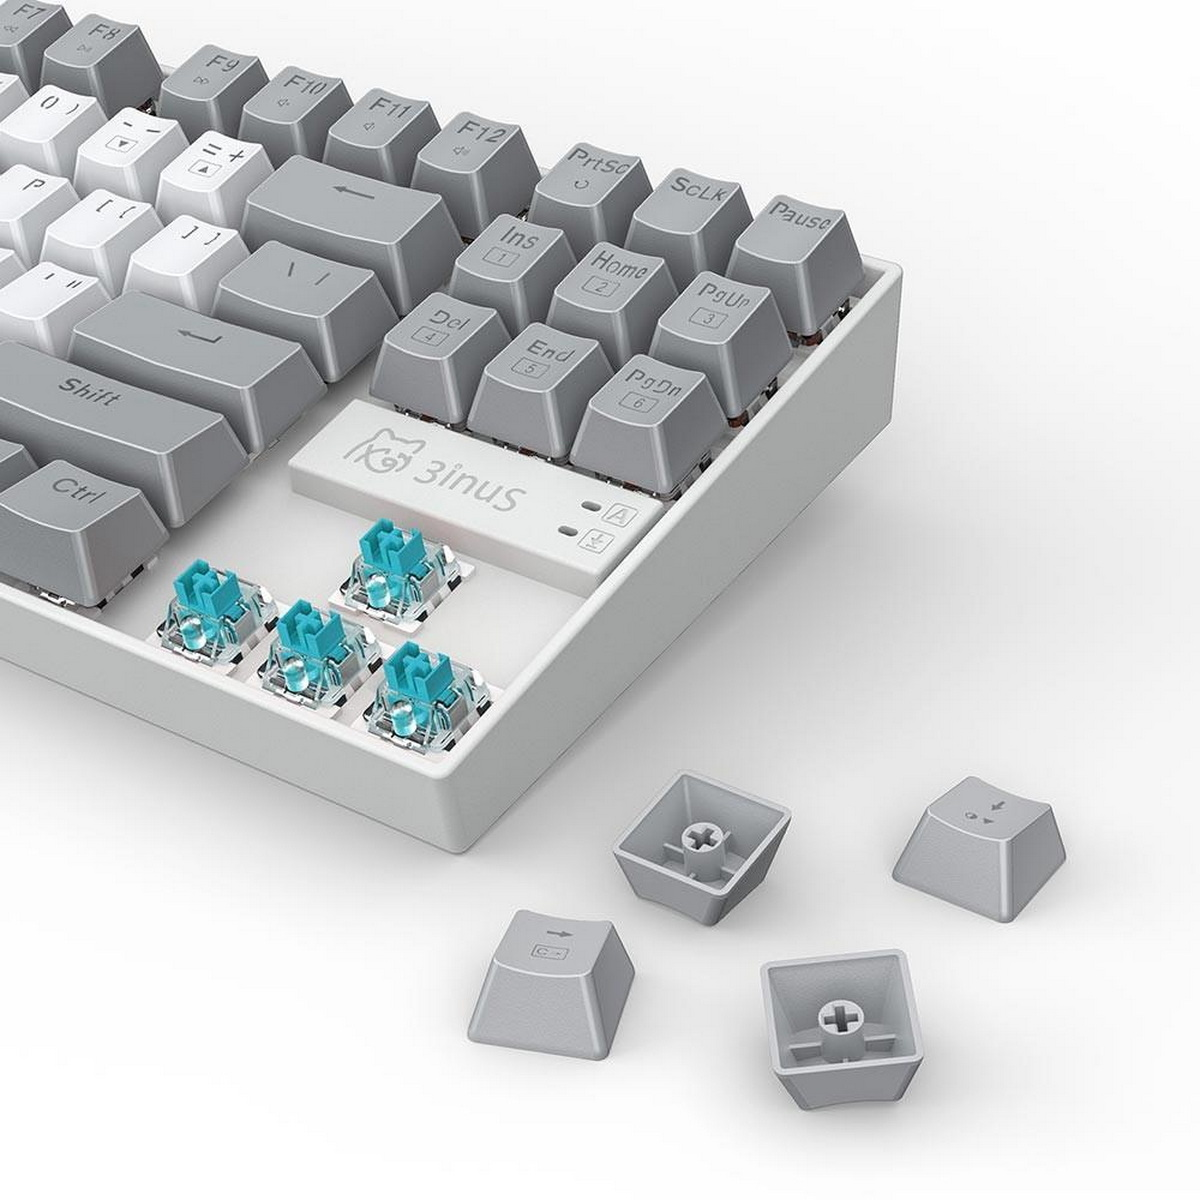 3INUS KEBOHUB EE01 Klickende Tastatur blaue Schalter